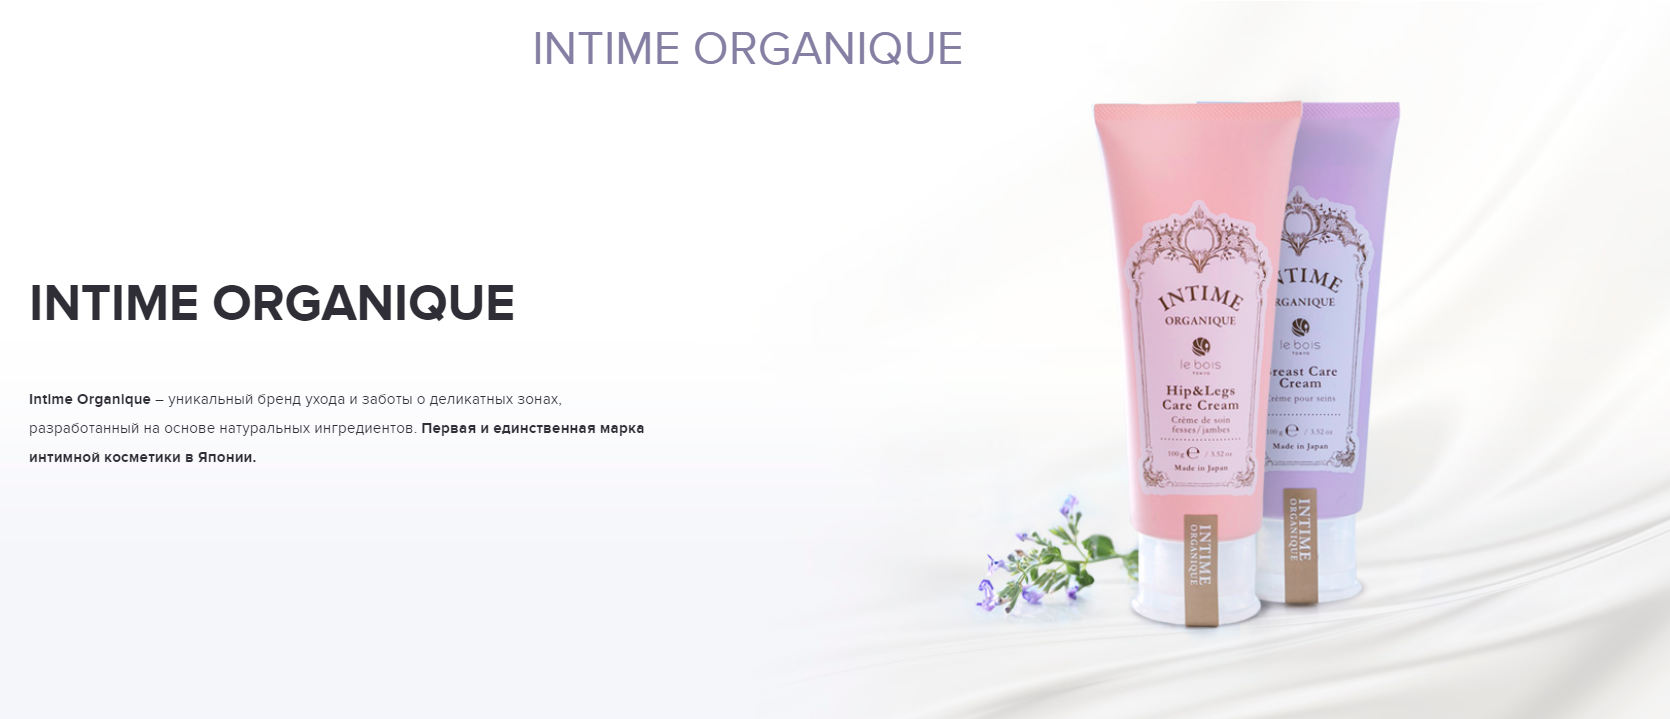 Косметологические препараты бренда Intime Organique